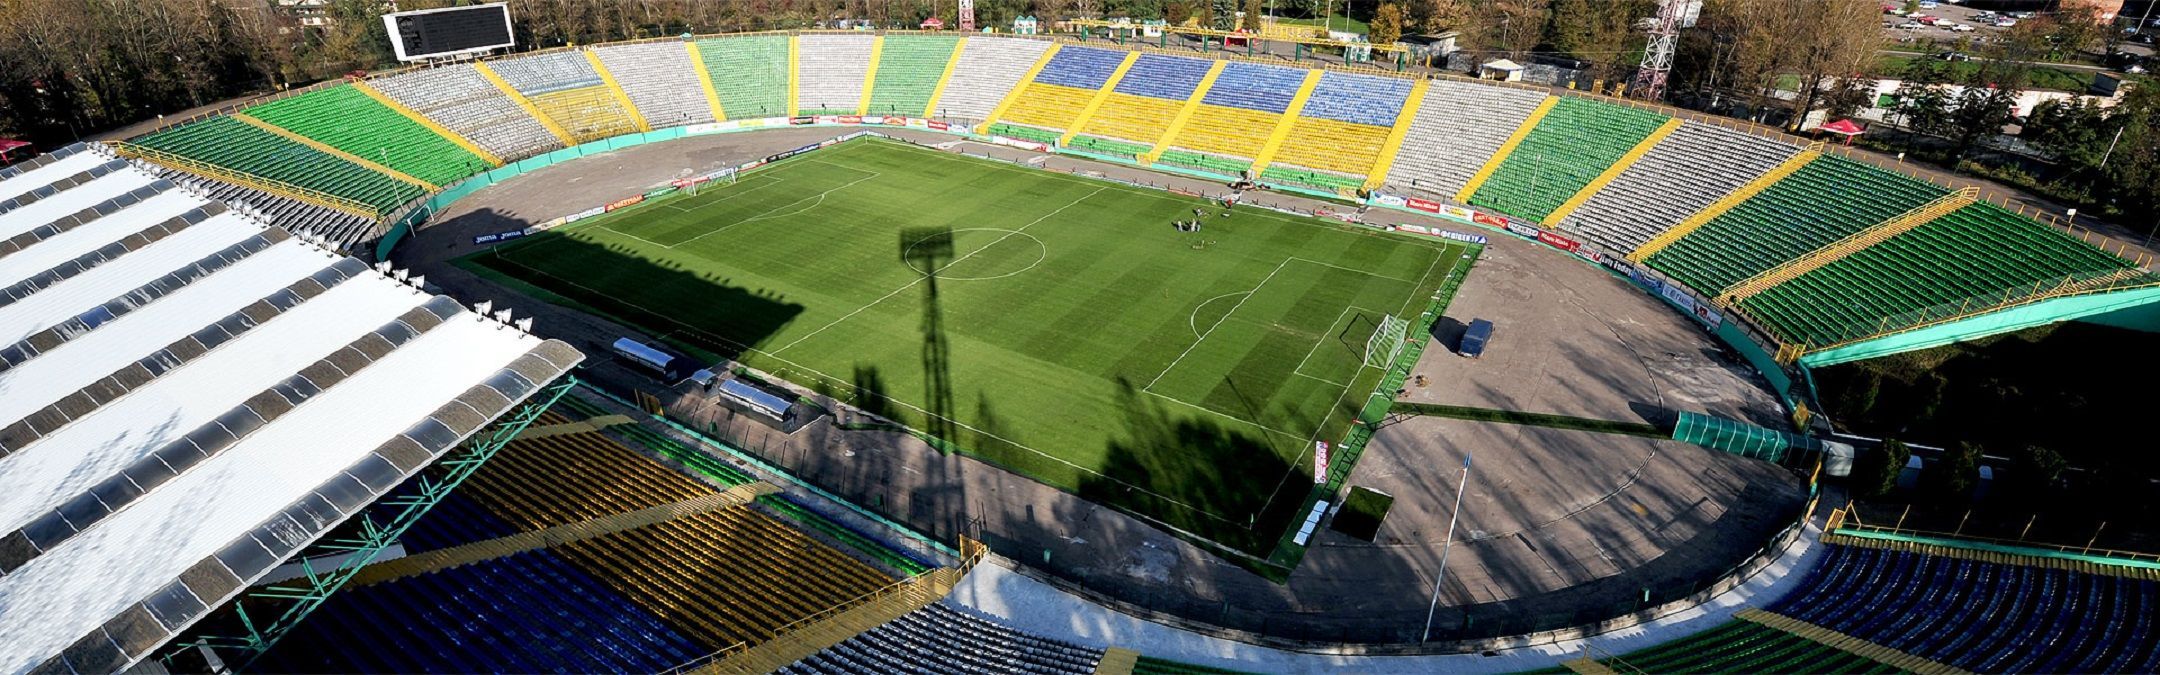 Один матч – півмільйона гривень: "Карпати" потратили фантастичну суму на стадіон "Україна"